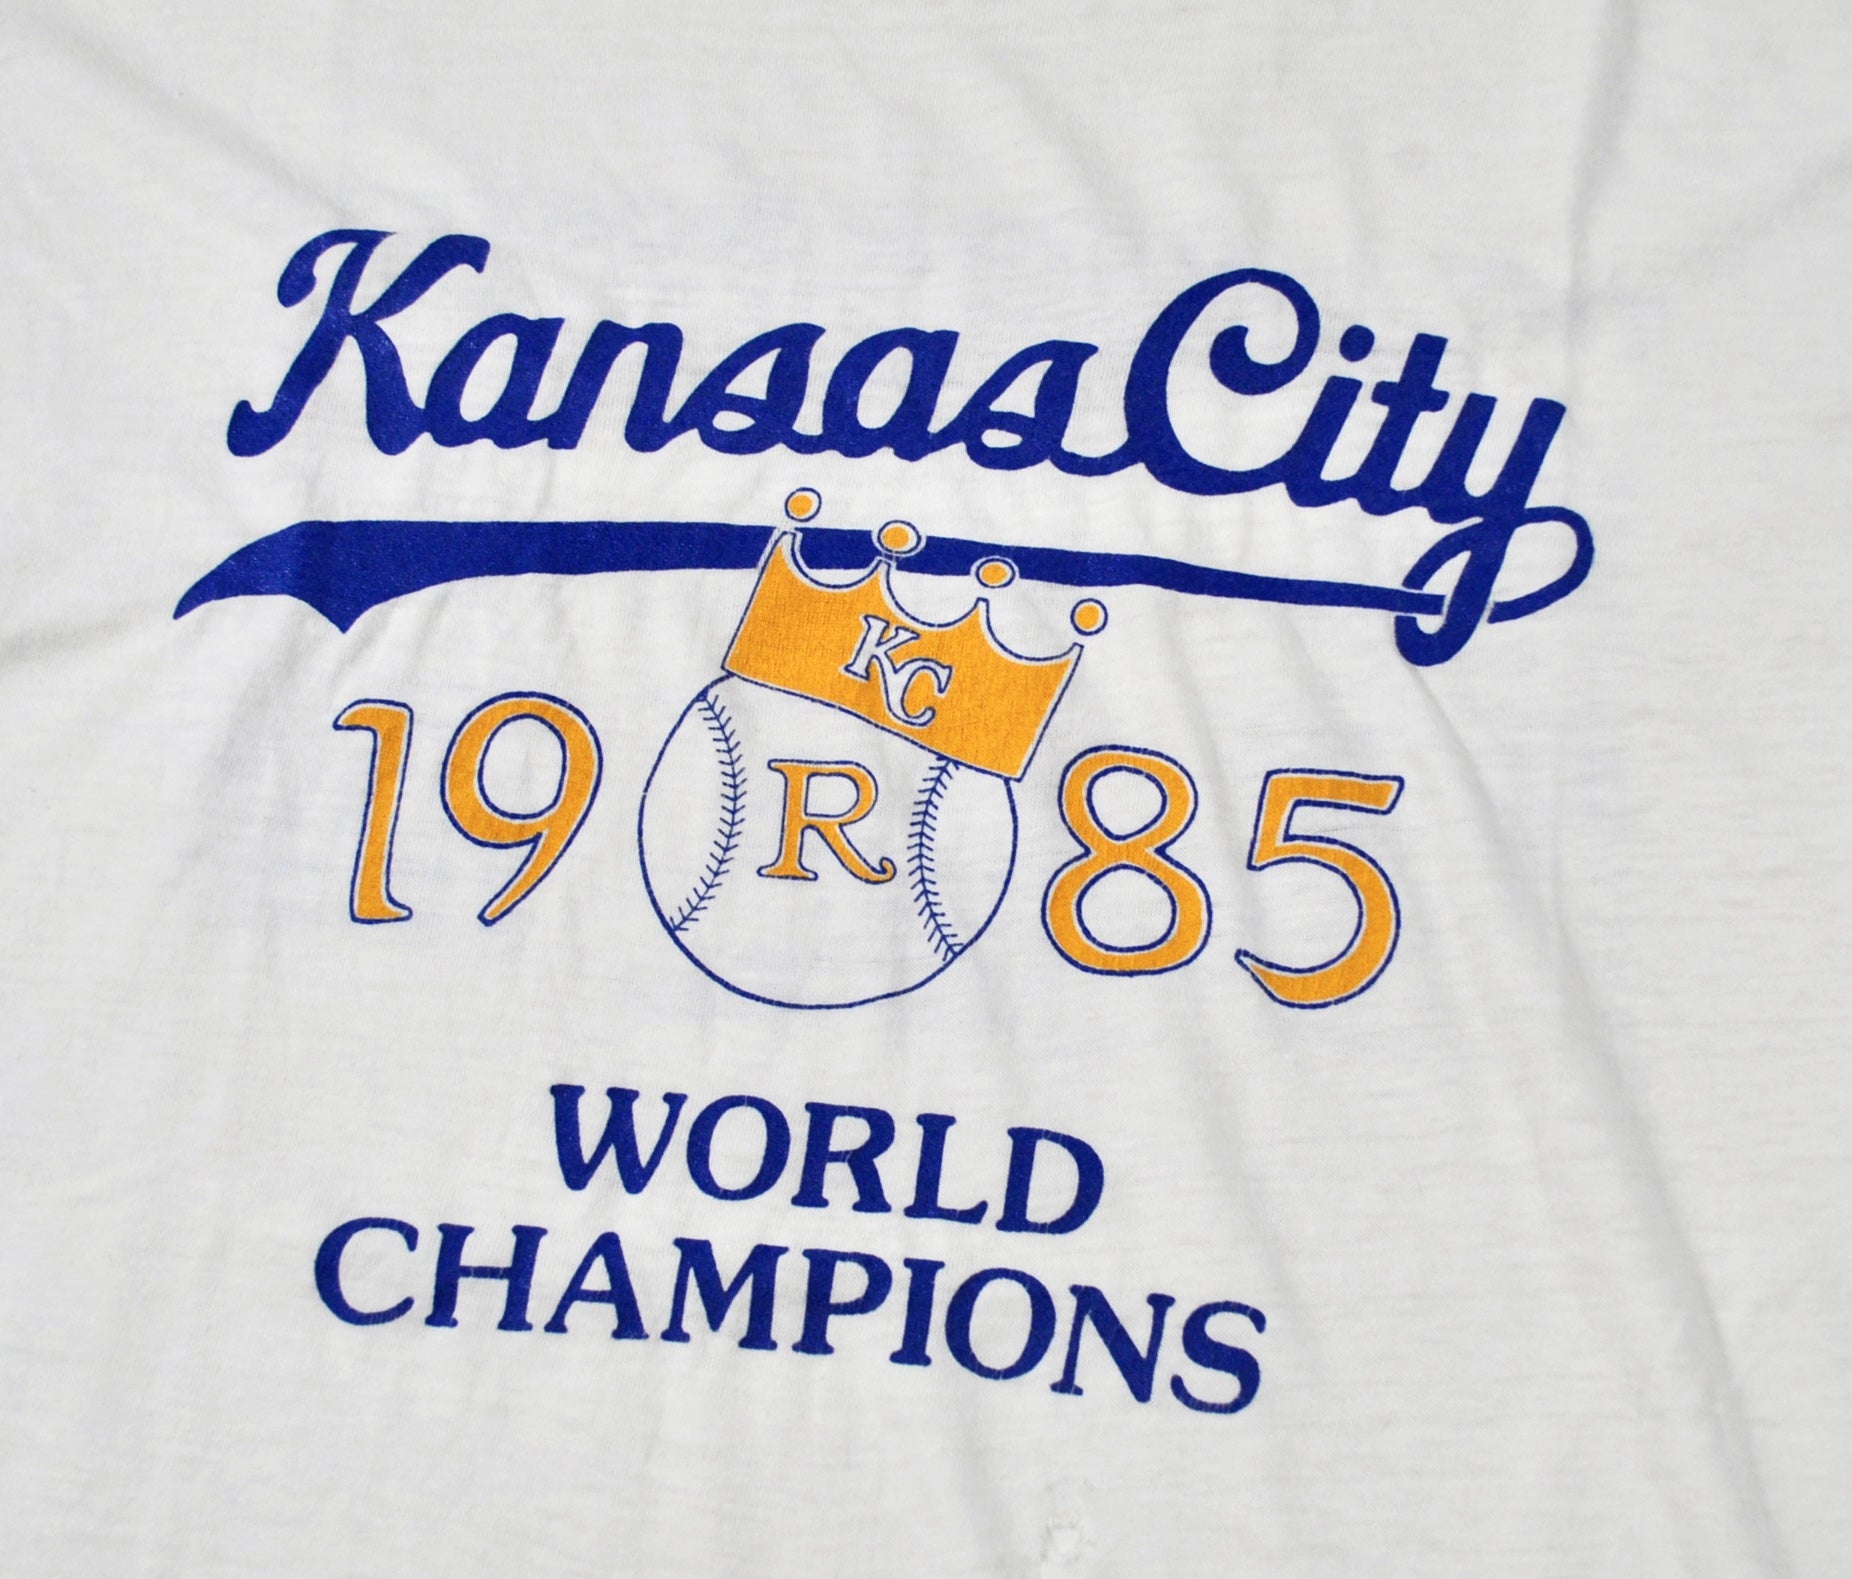 Vintage Kansas City Royals 1985 World Champions The Miracle